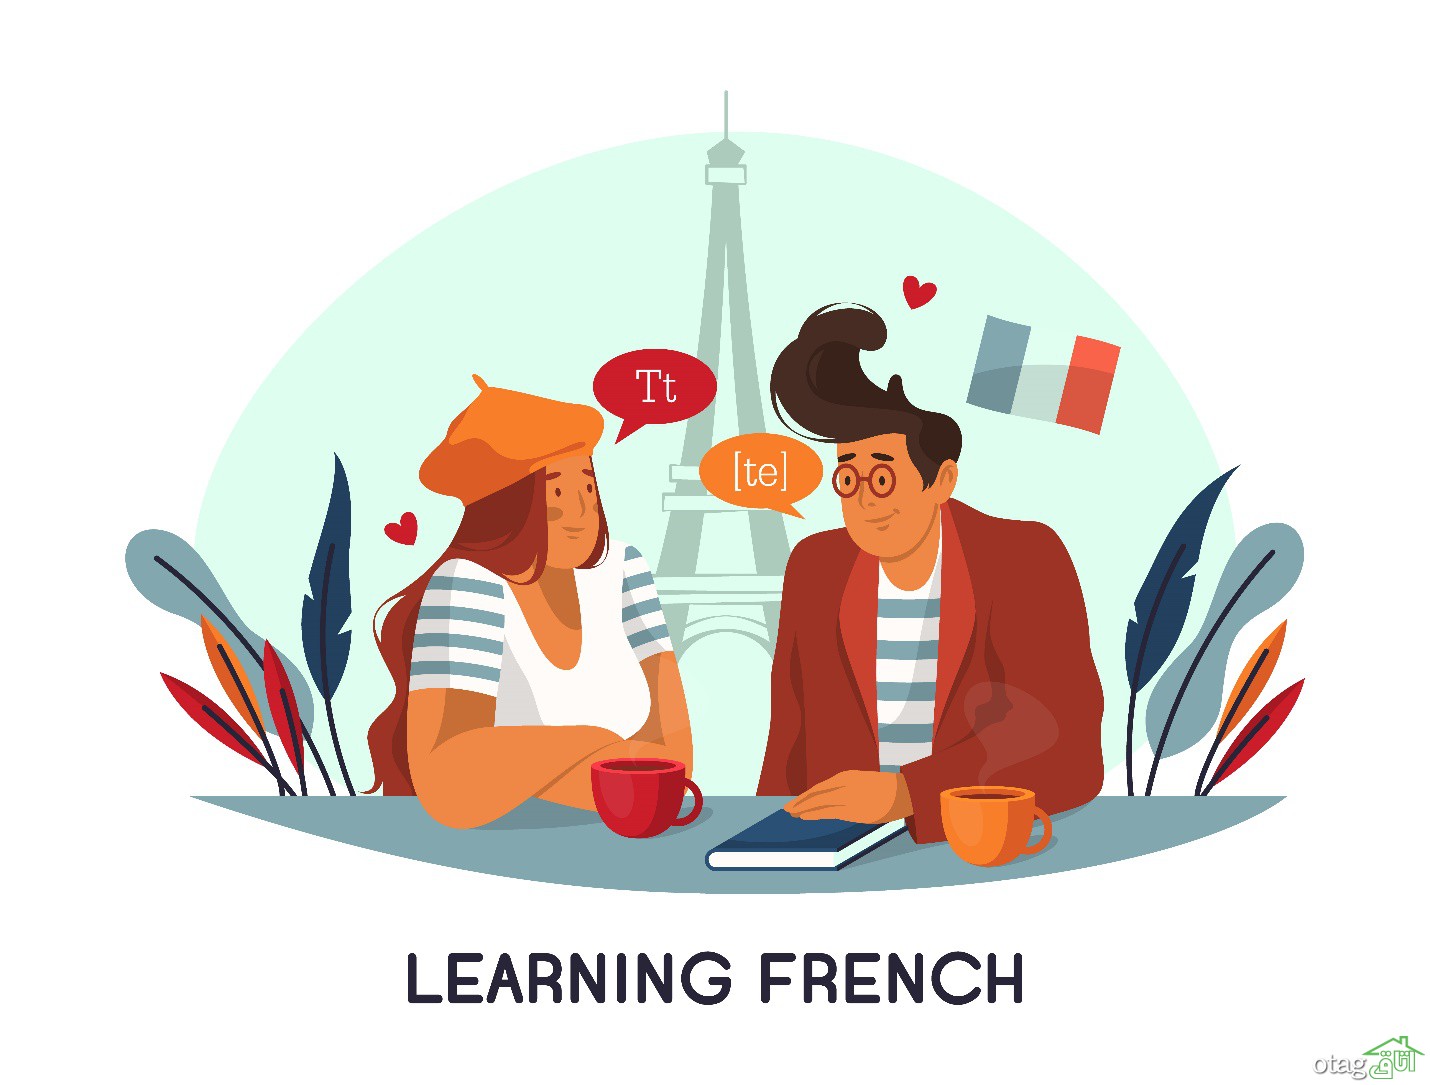 پیشرفت سریع در یادگیری تدریس خصوصی زبان فرانسه